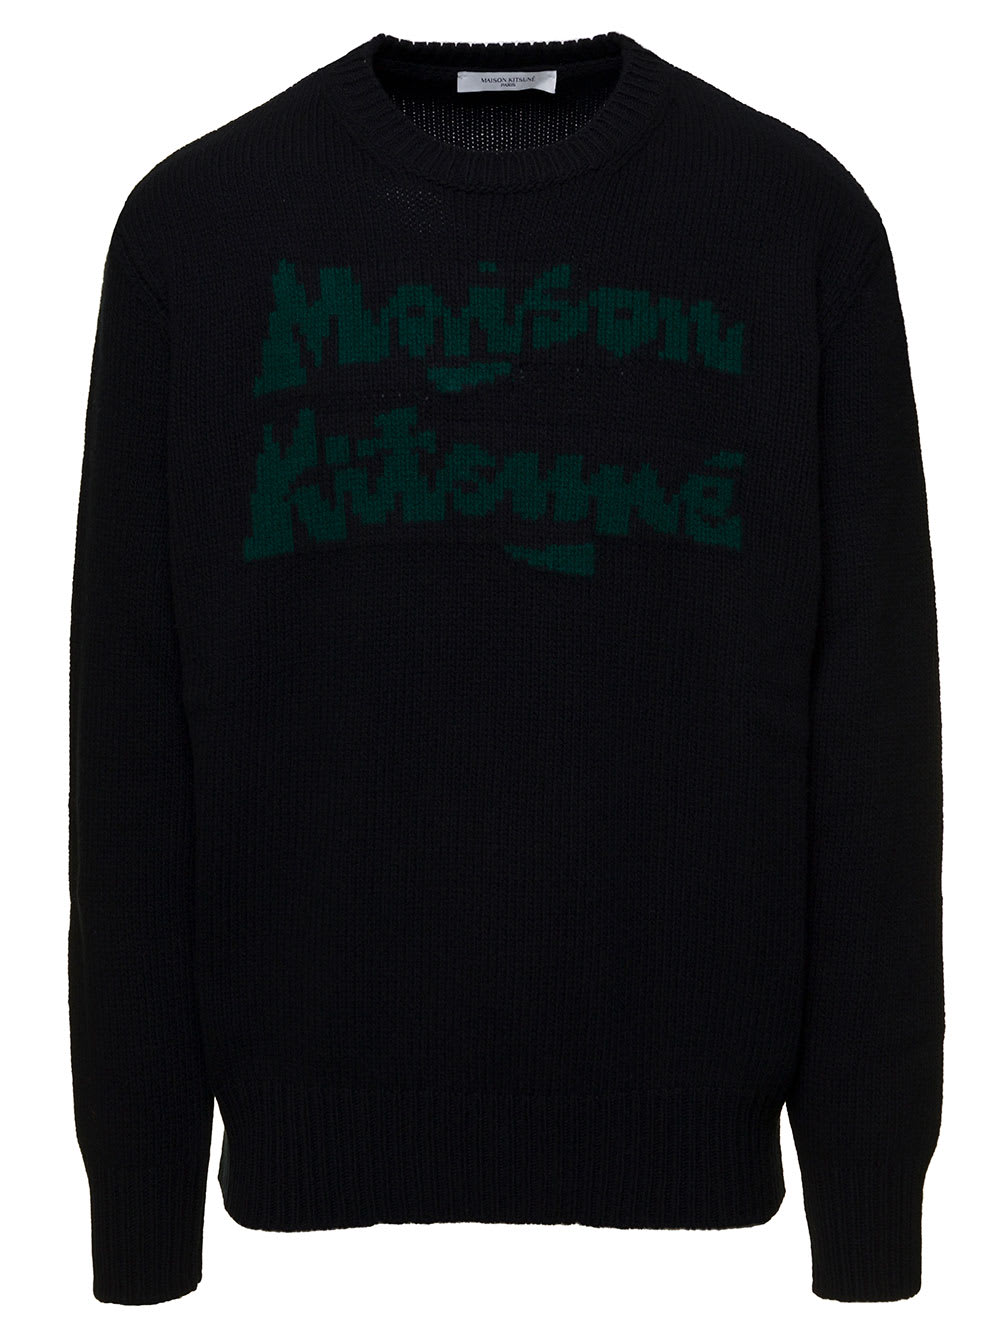 Maison Kitsuné Black Jacquard Lettering Sweater In Wool Man Maison Kitsune